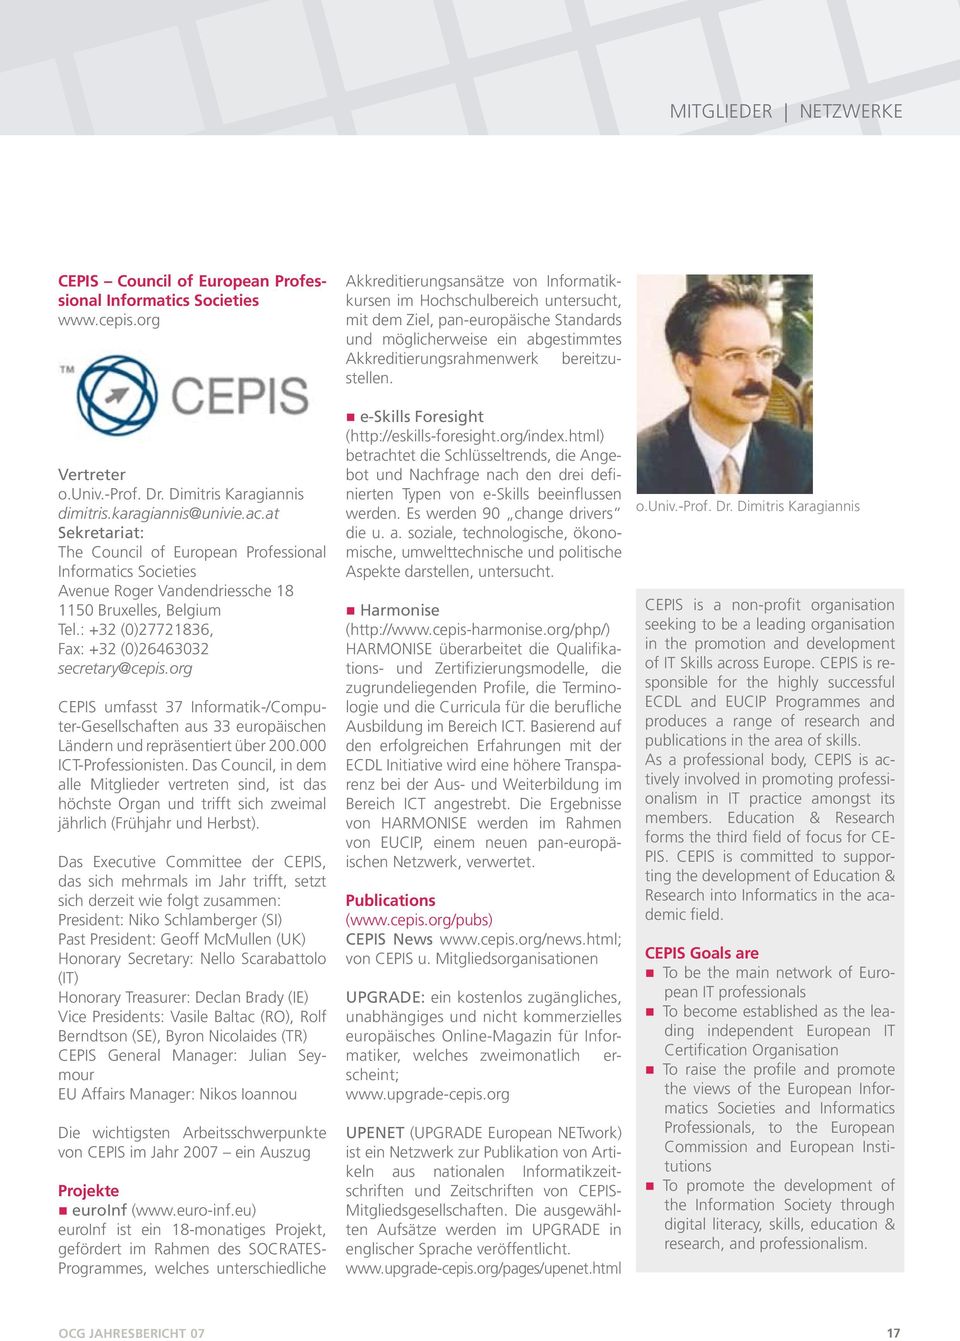 org CEPIS umfasst 37 Informatik-/Computer-Gesellschaften aus 33 europäischen Ländern und repräsentiert über 200.000 ICT-Professionisten.